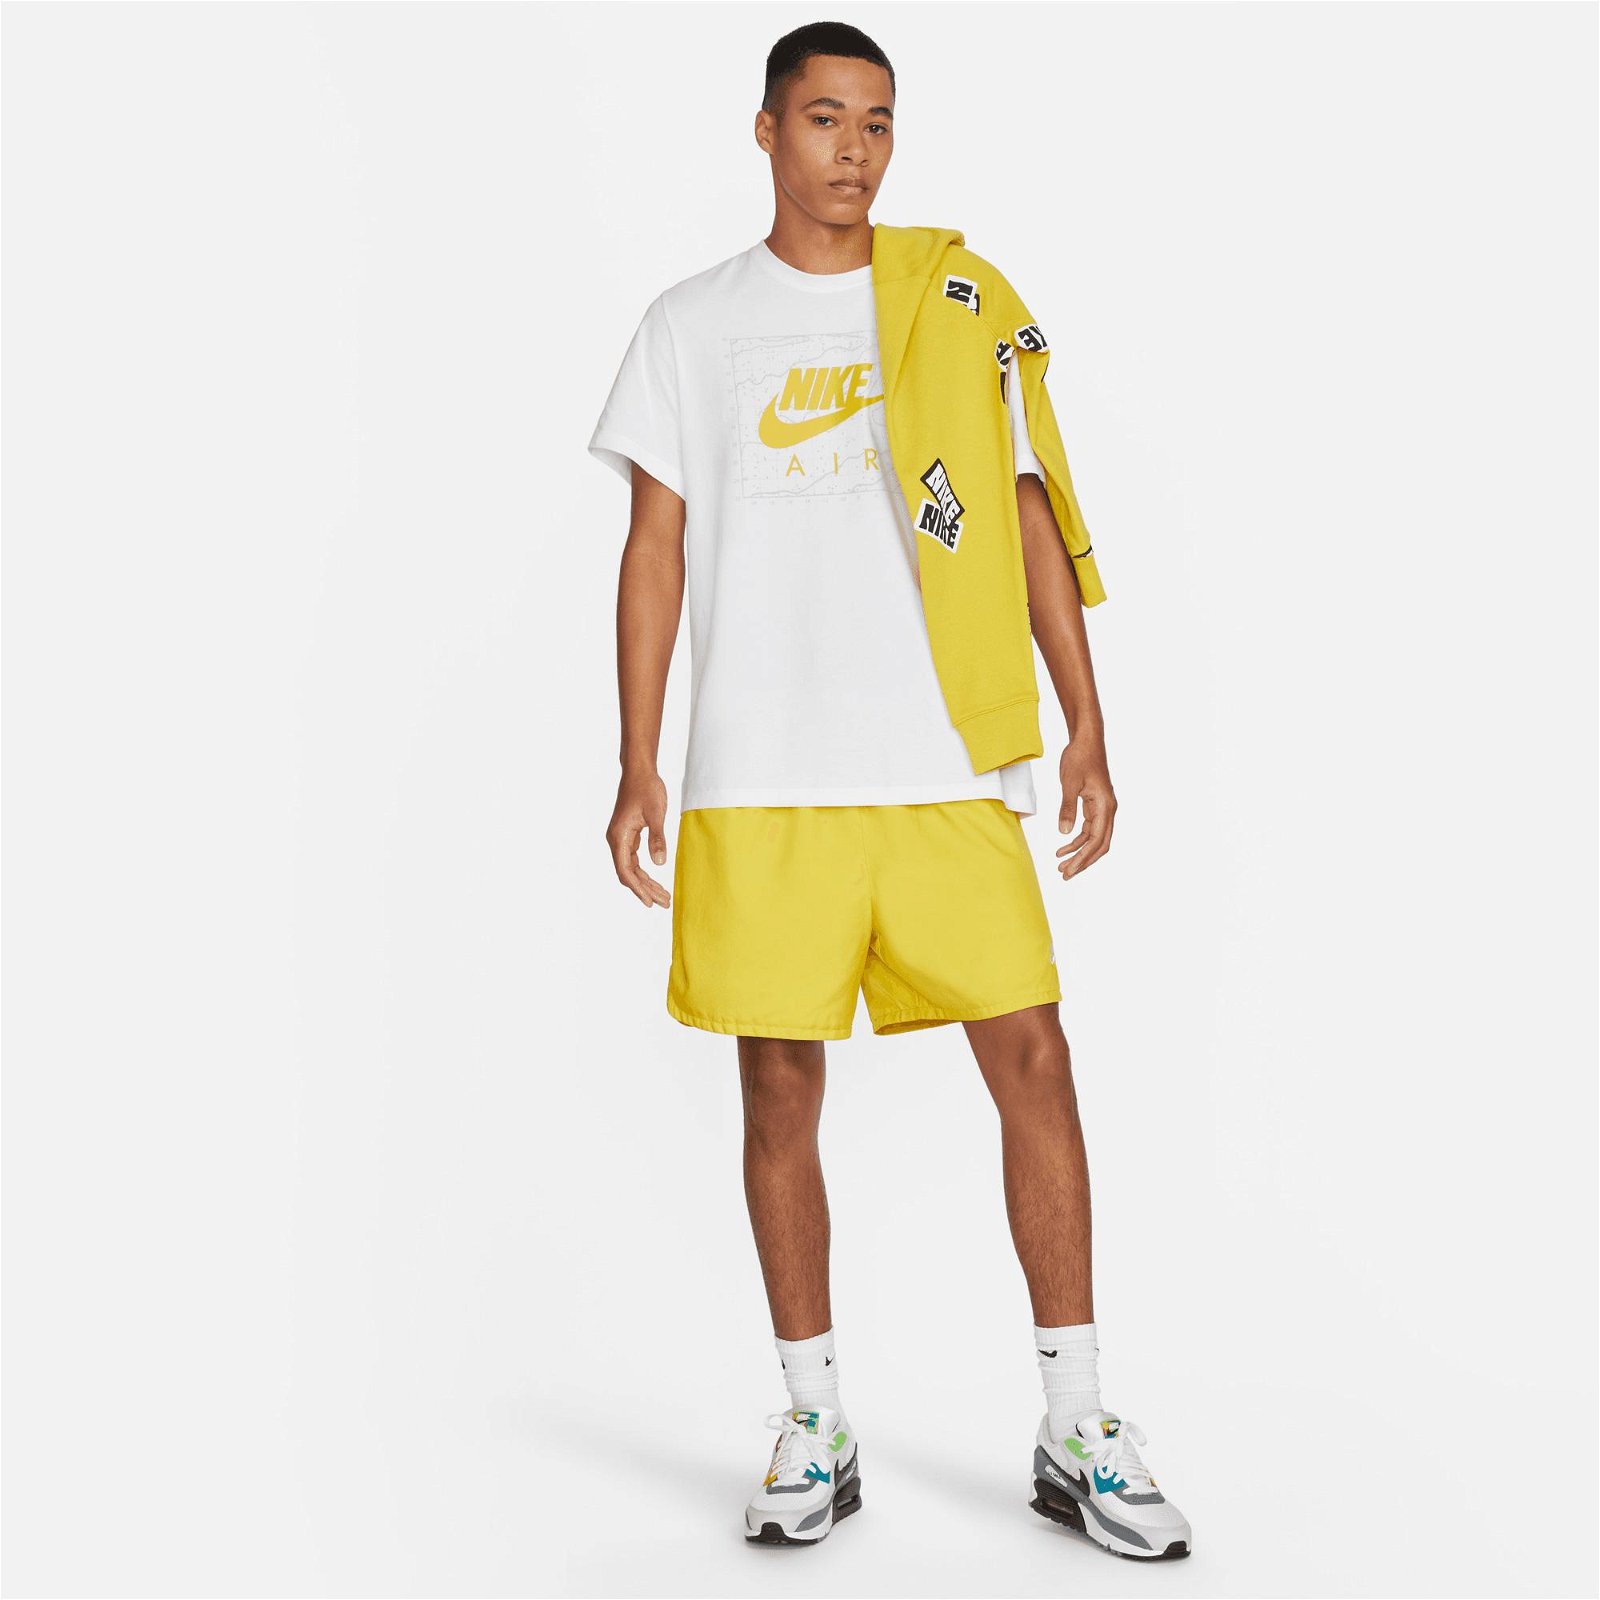 Nike Sportswear Air Hbr 2 Erkek Beyaz/Sarı T-Shirt